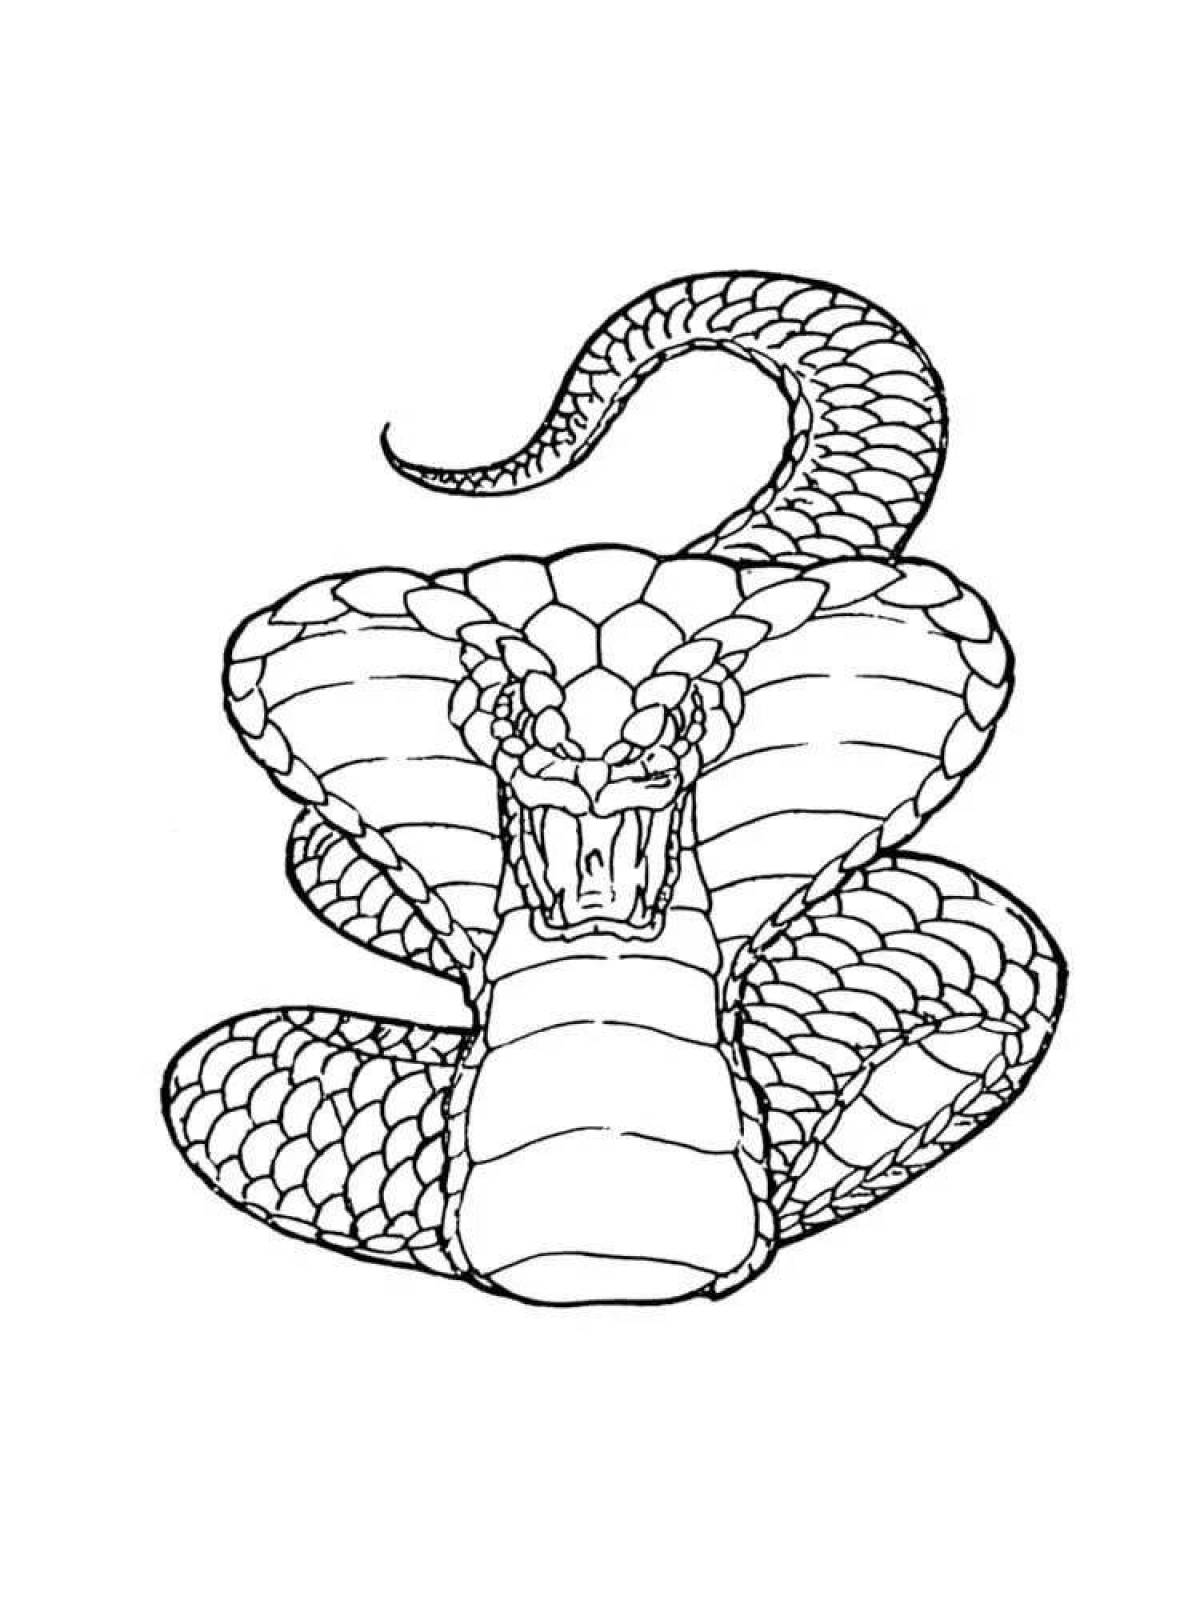 Раскраски змей распечатать. Змея раскраска. Раскраска змеи для детей. Кобра рисунок. Раскраска змея Кобра.